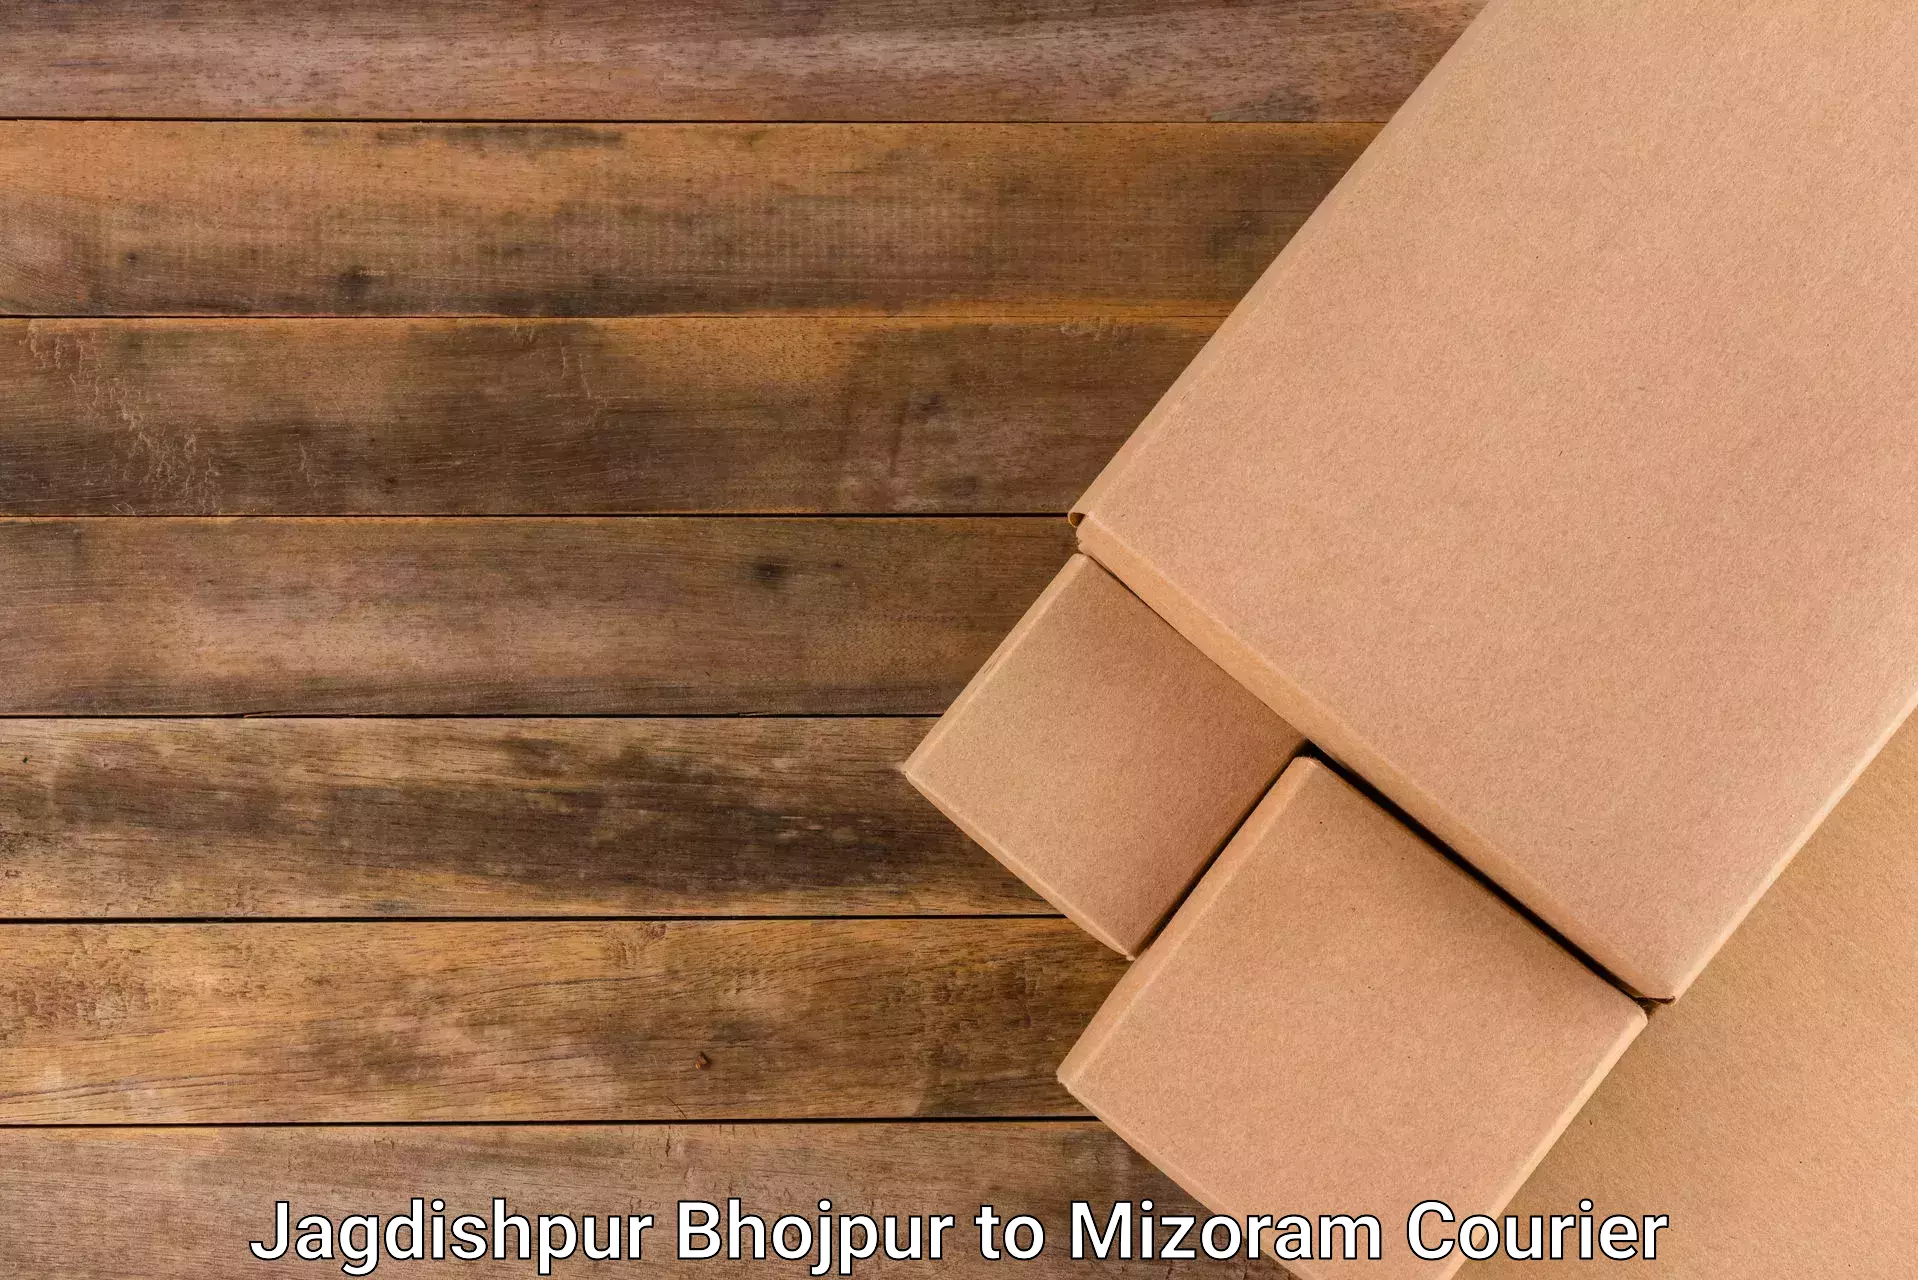 Logistics service provider Jagdishpur Bhojpur to Aizawl